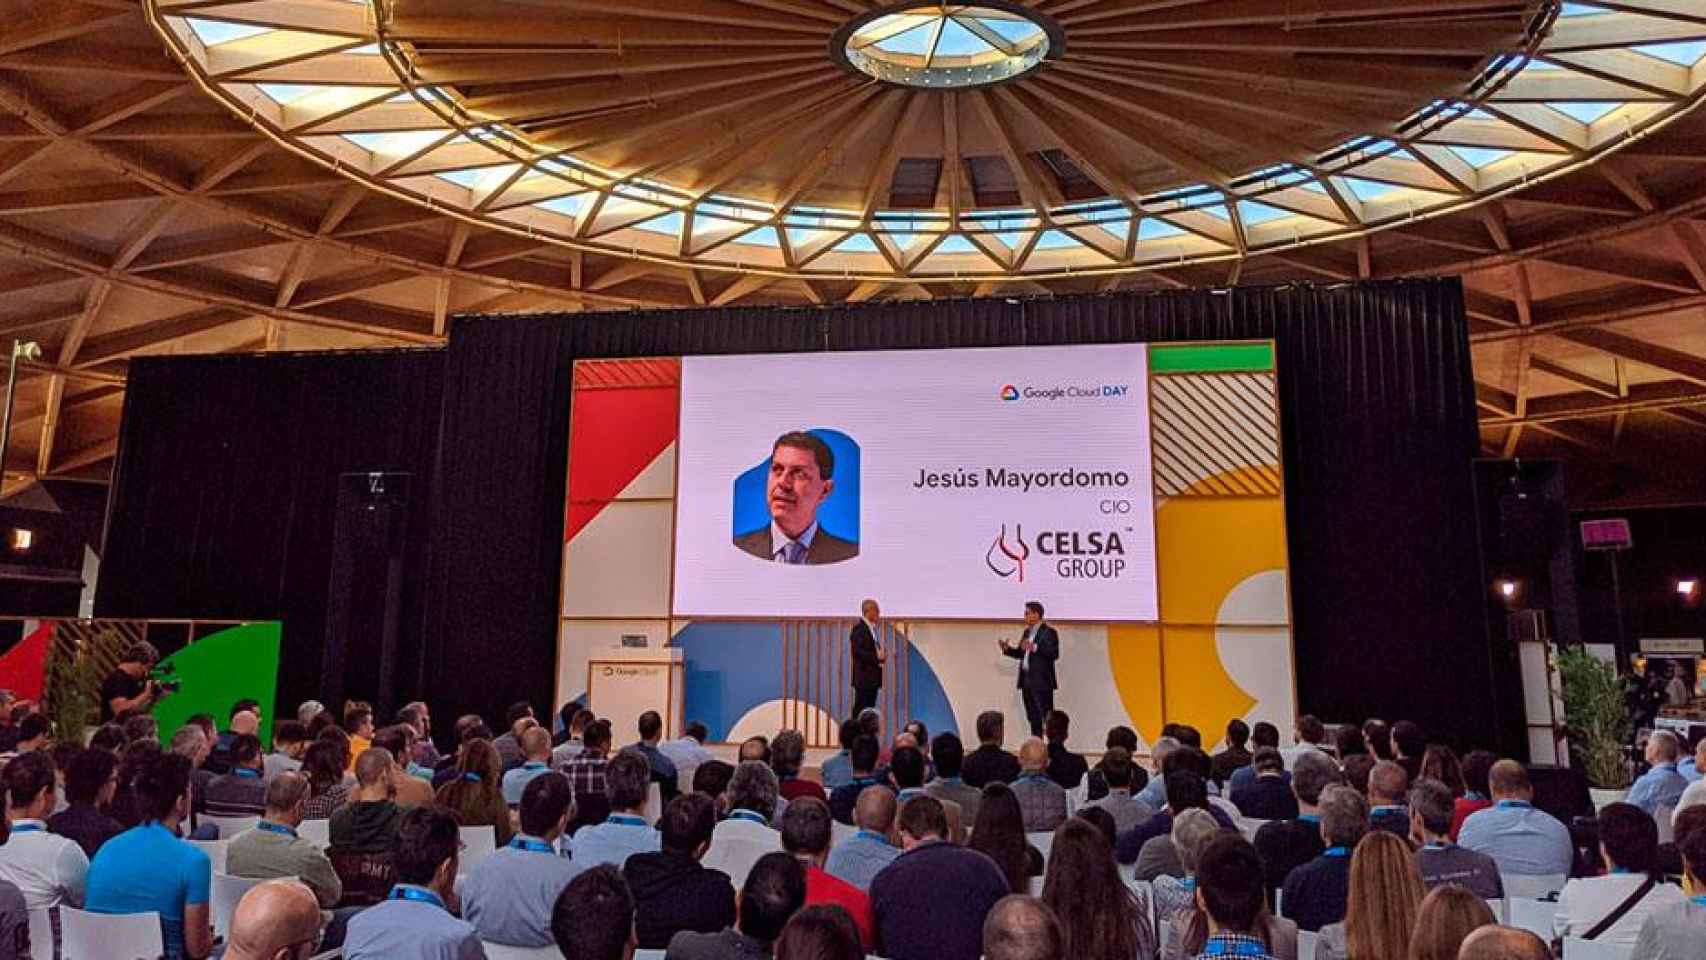 Panorámica de una de las conferencias del Google Cloud Day Barcelona / GOOGLE